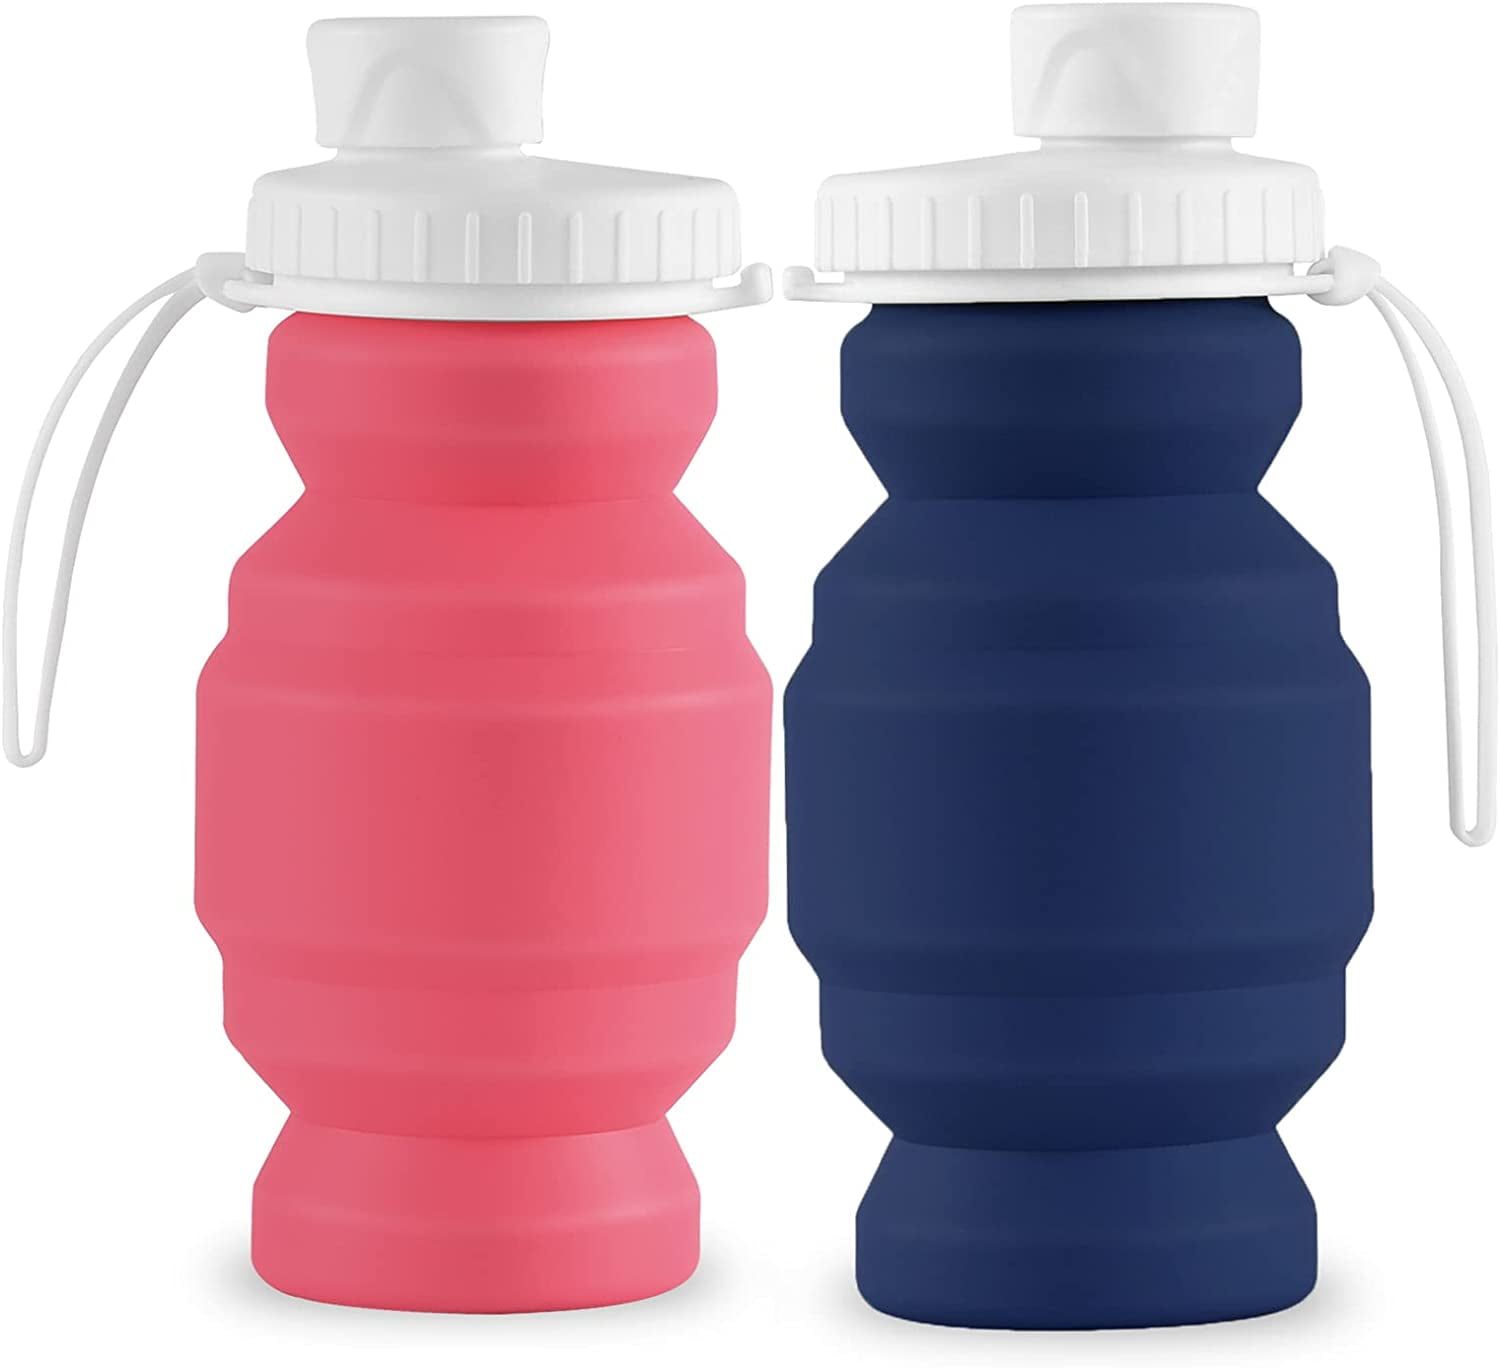 Sports Water Bottles Gym Leak-proof Drop-proof Portable Shaker Outdoor  Travel Kettle Plastic Drink Water Bottle BPA Free